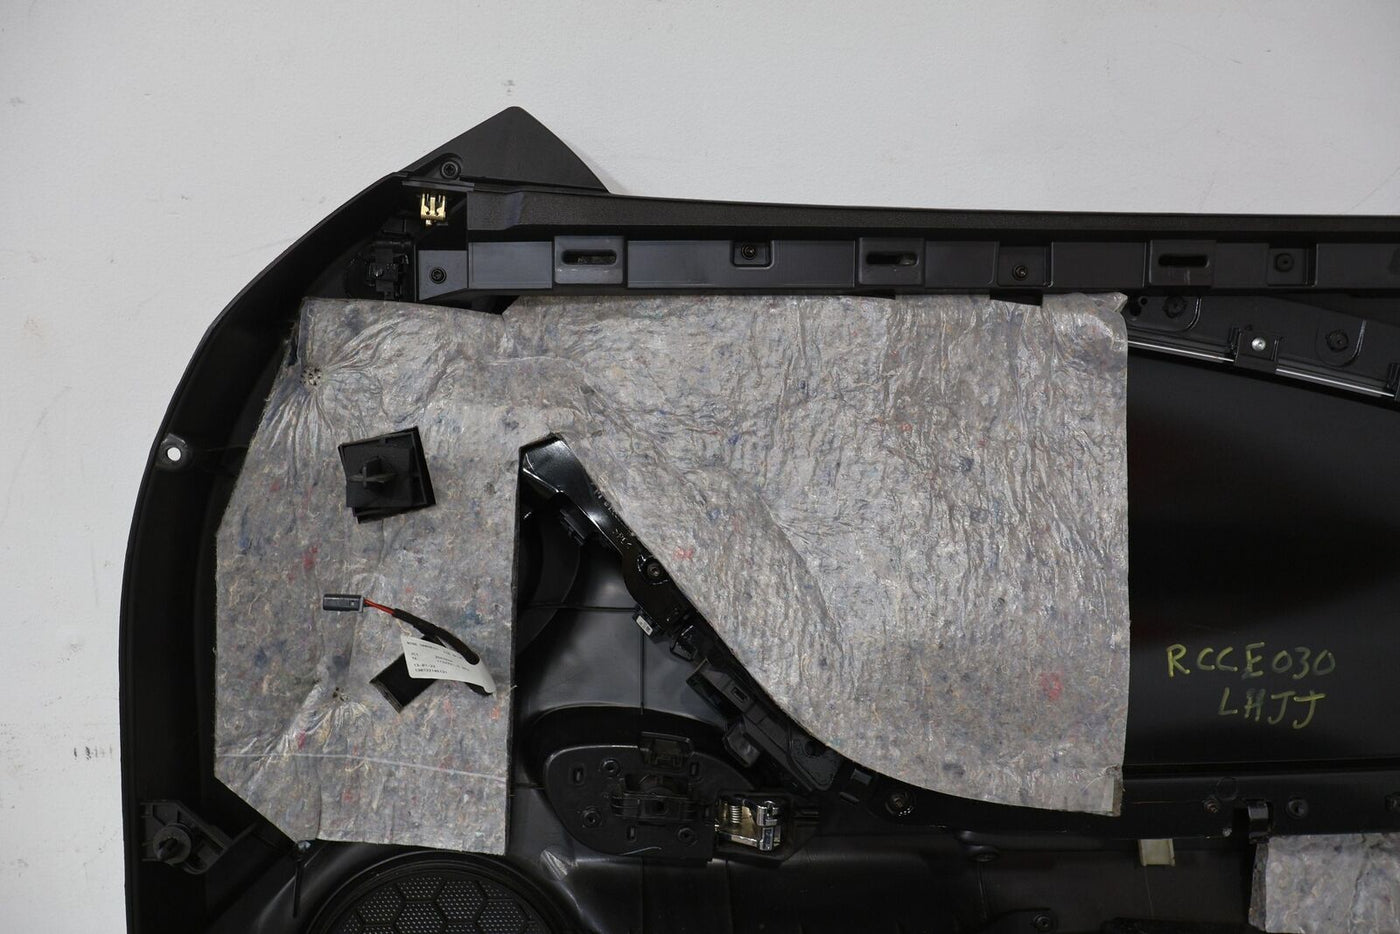 12-15 Chevy Camaro ZL1 Left LH Interior Door Trim Panel (Black/Red Stitch ANF)